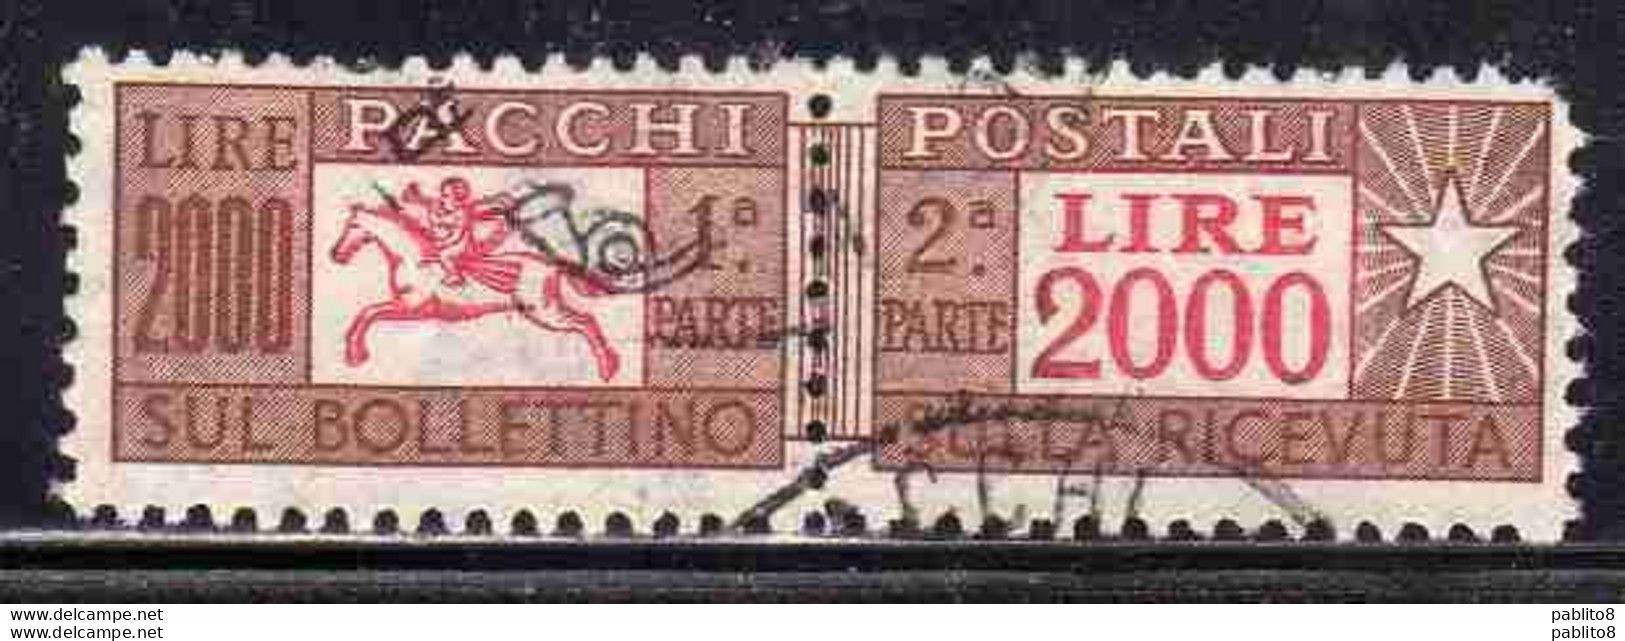 ITALIA REPUBBLICA ITALY REPUBLIC 1955 1979 PACCHI POSTALI PARCEL POST STELLE STARS LIRE 2000 USATO USED OBLITERE' - Pacchi Postali